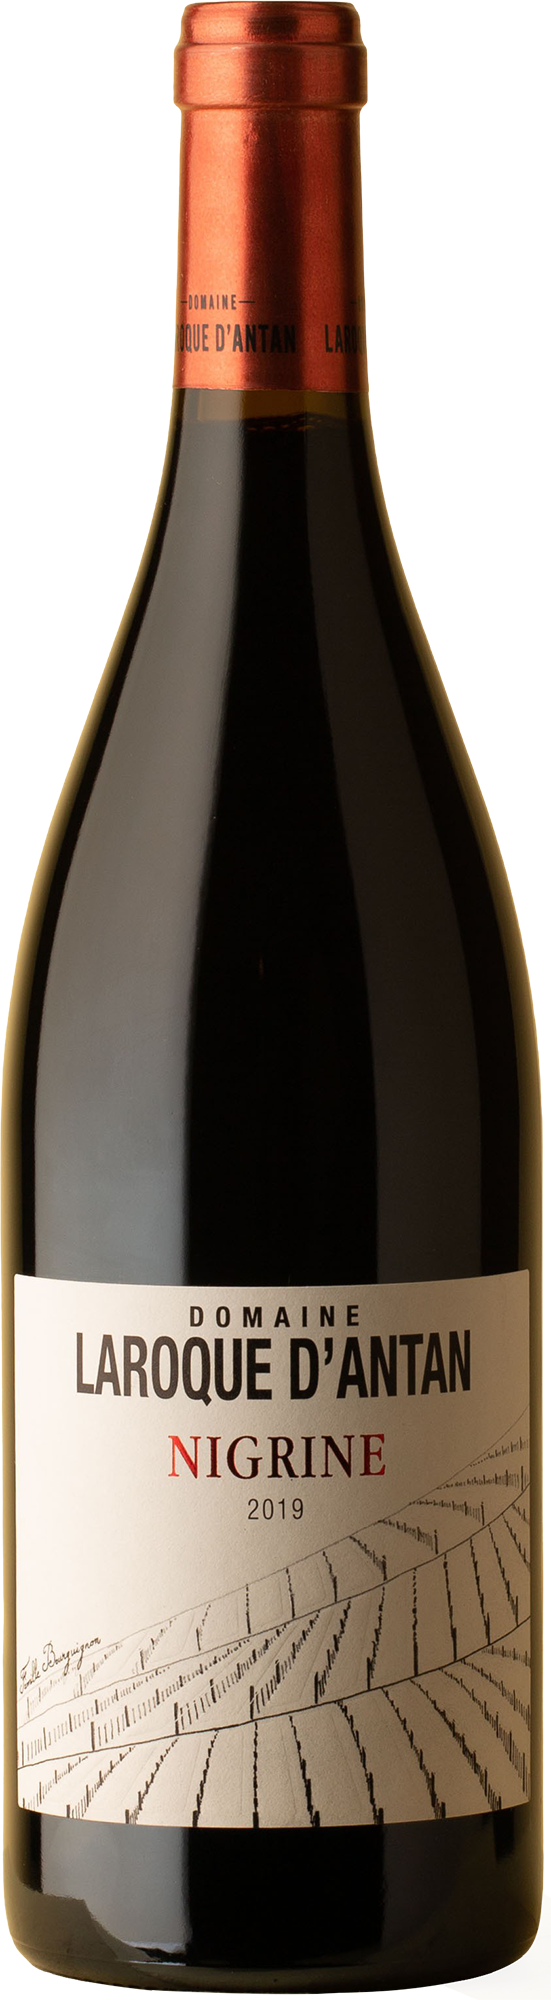 Domaine Laroque D'Antan - Cote du Lot Nigrine Rouge Cabernet Franc / Malbec 2019 Red Wine